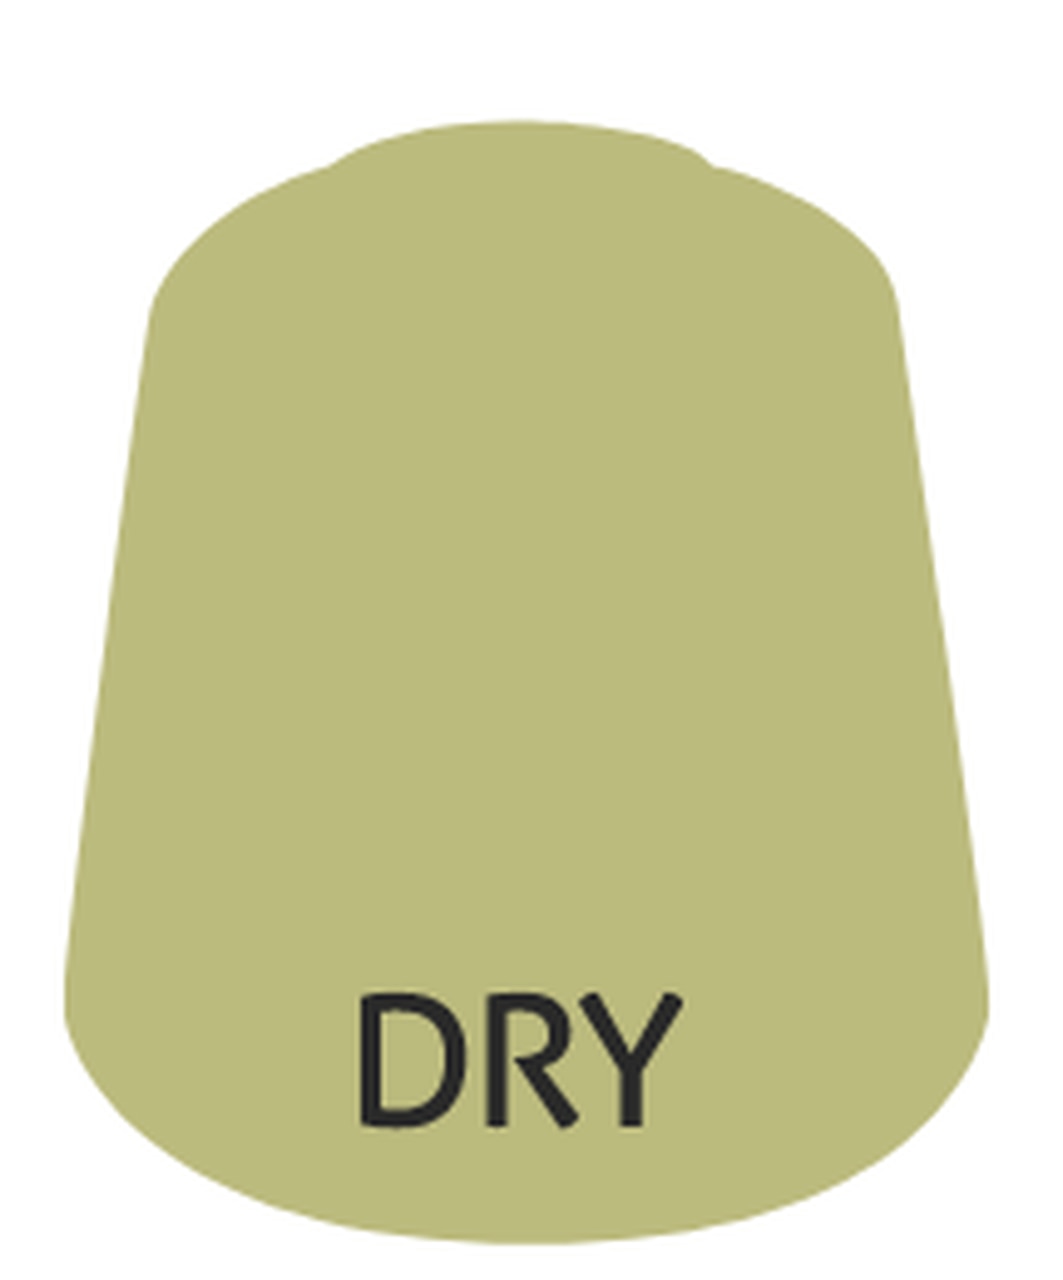 Citadel Paint: Dry - Underhive Ash